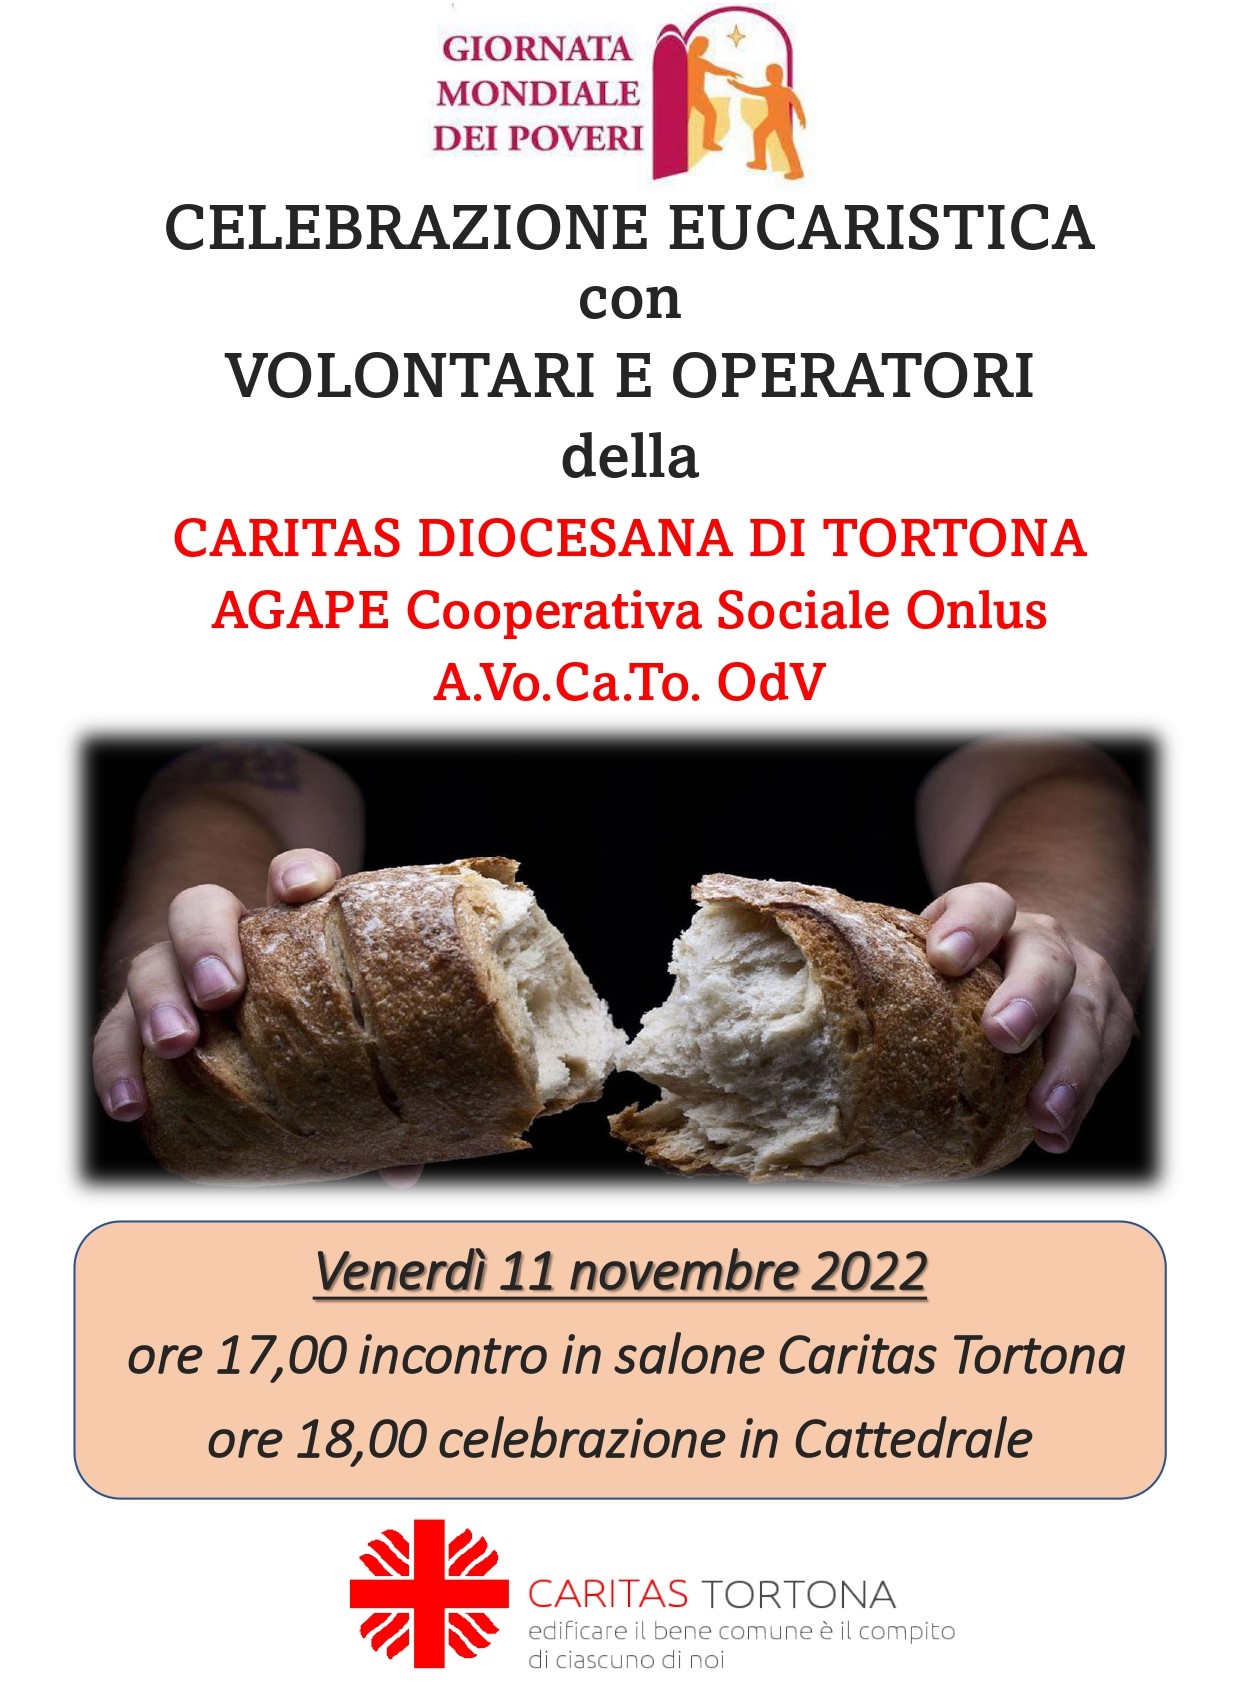 Celebrazione eucaristica con volontari ed operatori della Caritas Diocesana di Tortona, Agape cooperativa sociale onlus e A.VO.CA.TO. Odv.